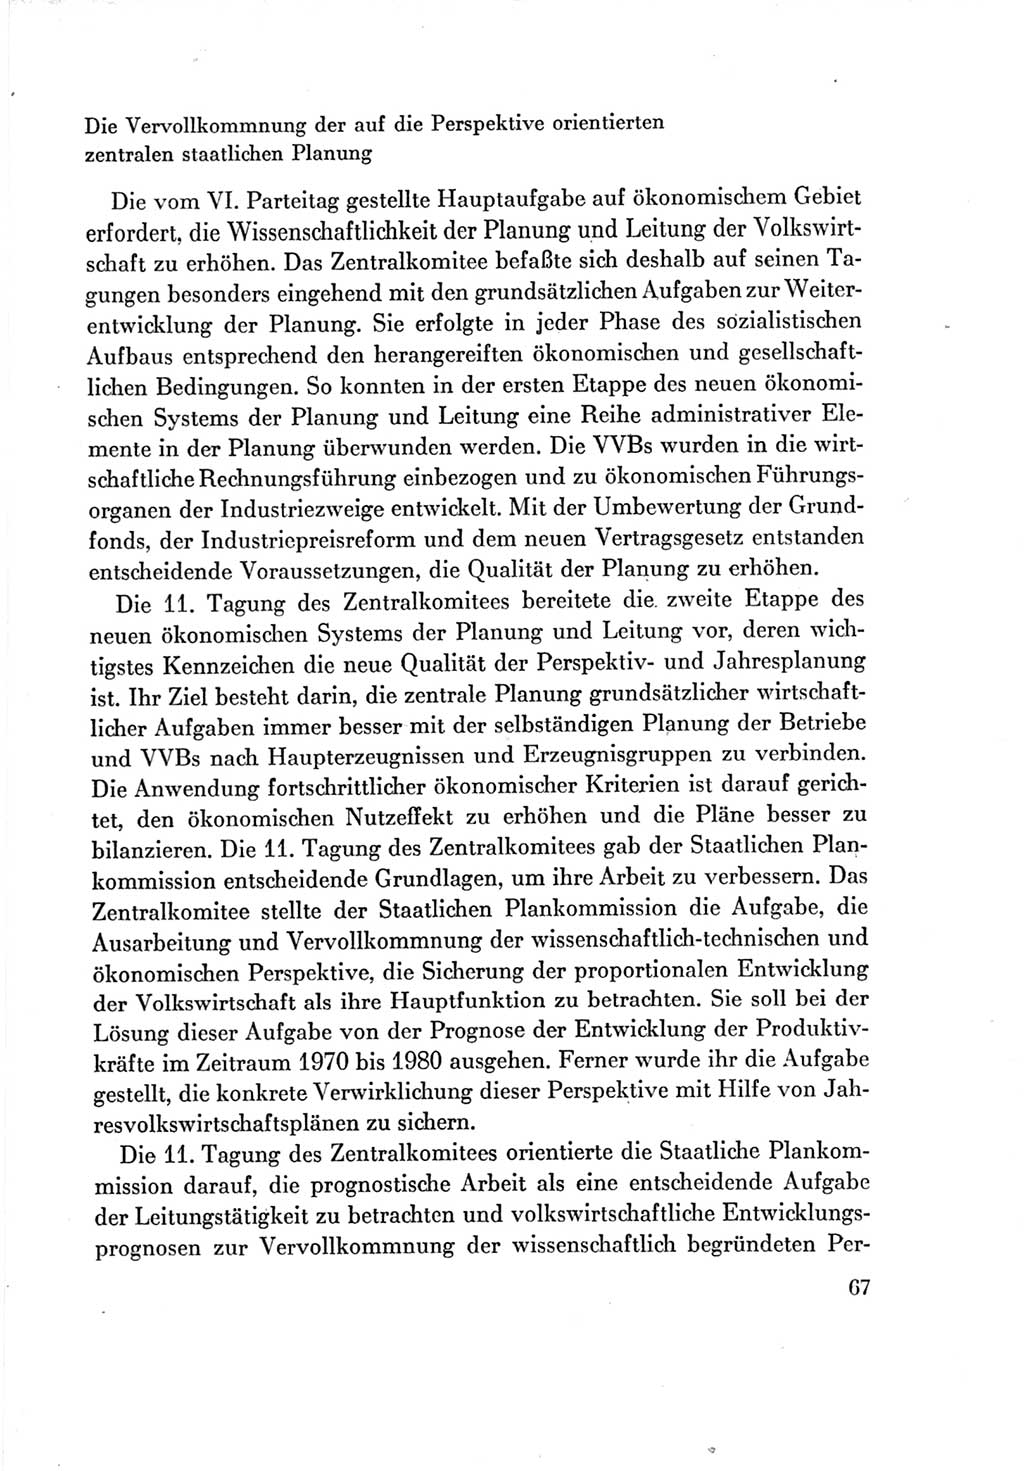 Protokoll der Verhandlungen des Ⅶ. Parteitages der Sozialistischen Einheitspartei Deutschlands (SED) [Deutsche Demokratische Republik (DDR)] 1967, Band Ⅳ, Seite 67 (Prot. Verh. Ⅶ. PT SED DDR 1967, Bd. Ⅳ, S. 67)